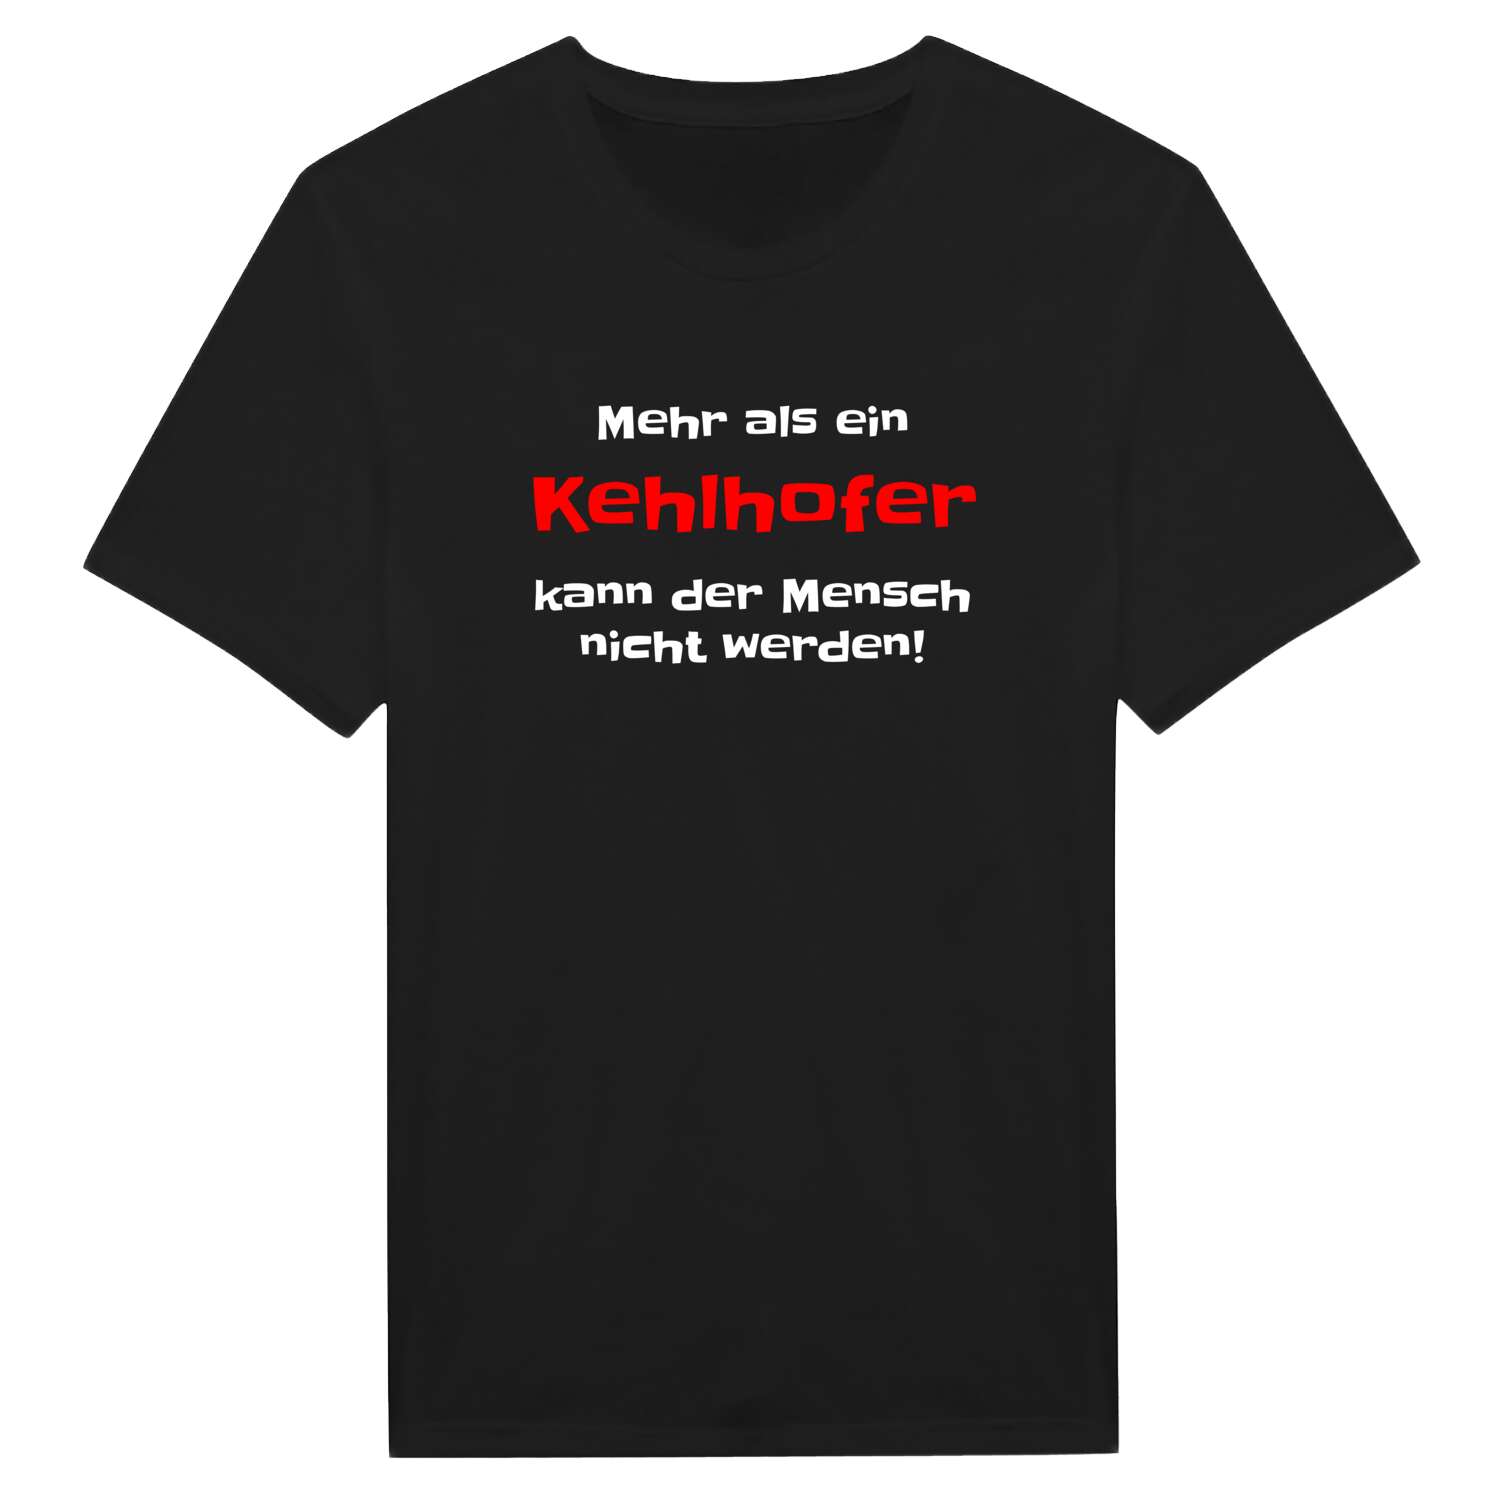 Kehlhof T-Shirt »Mehr als ein«